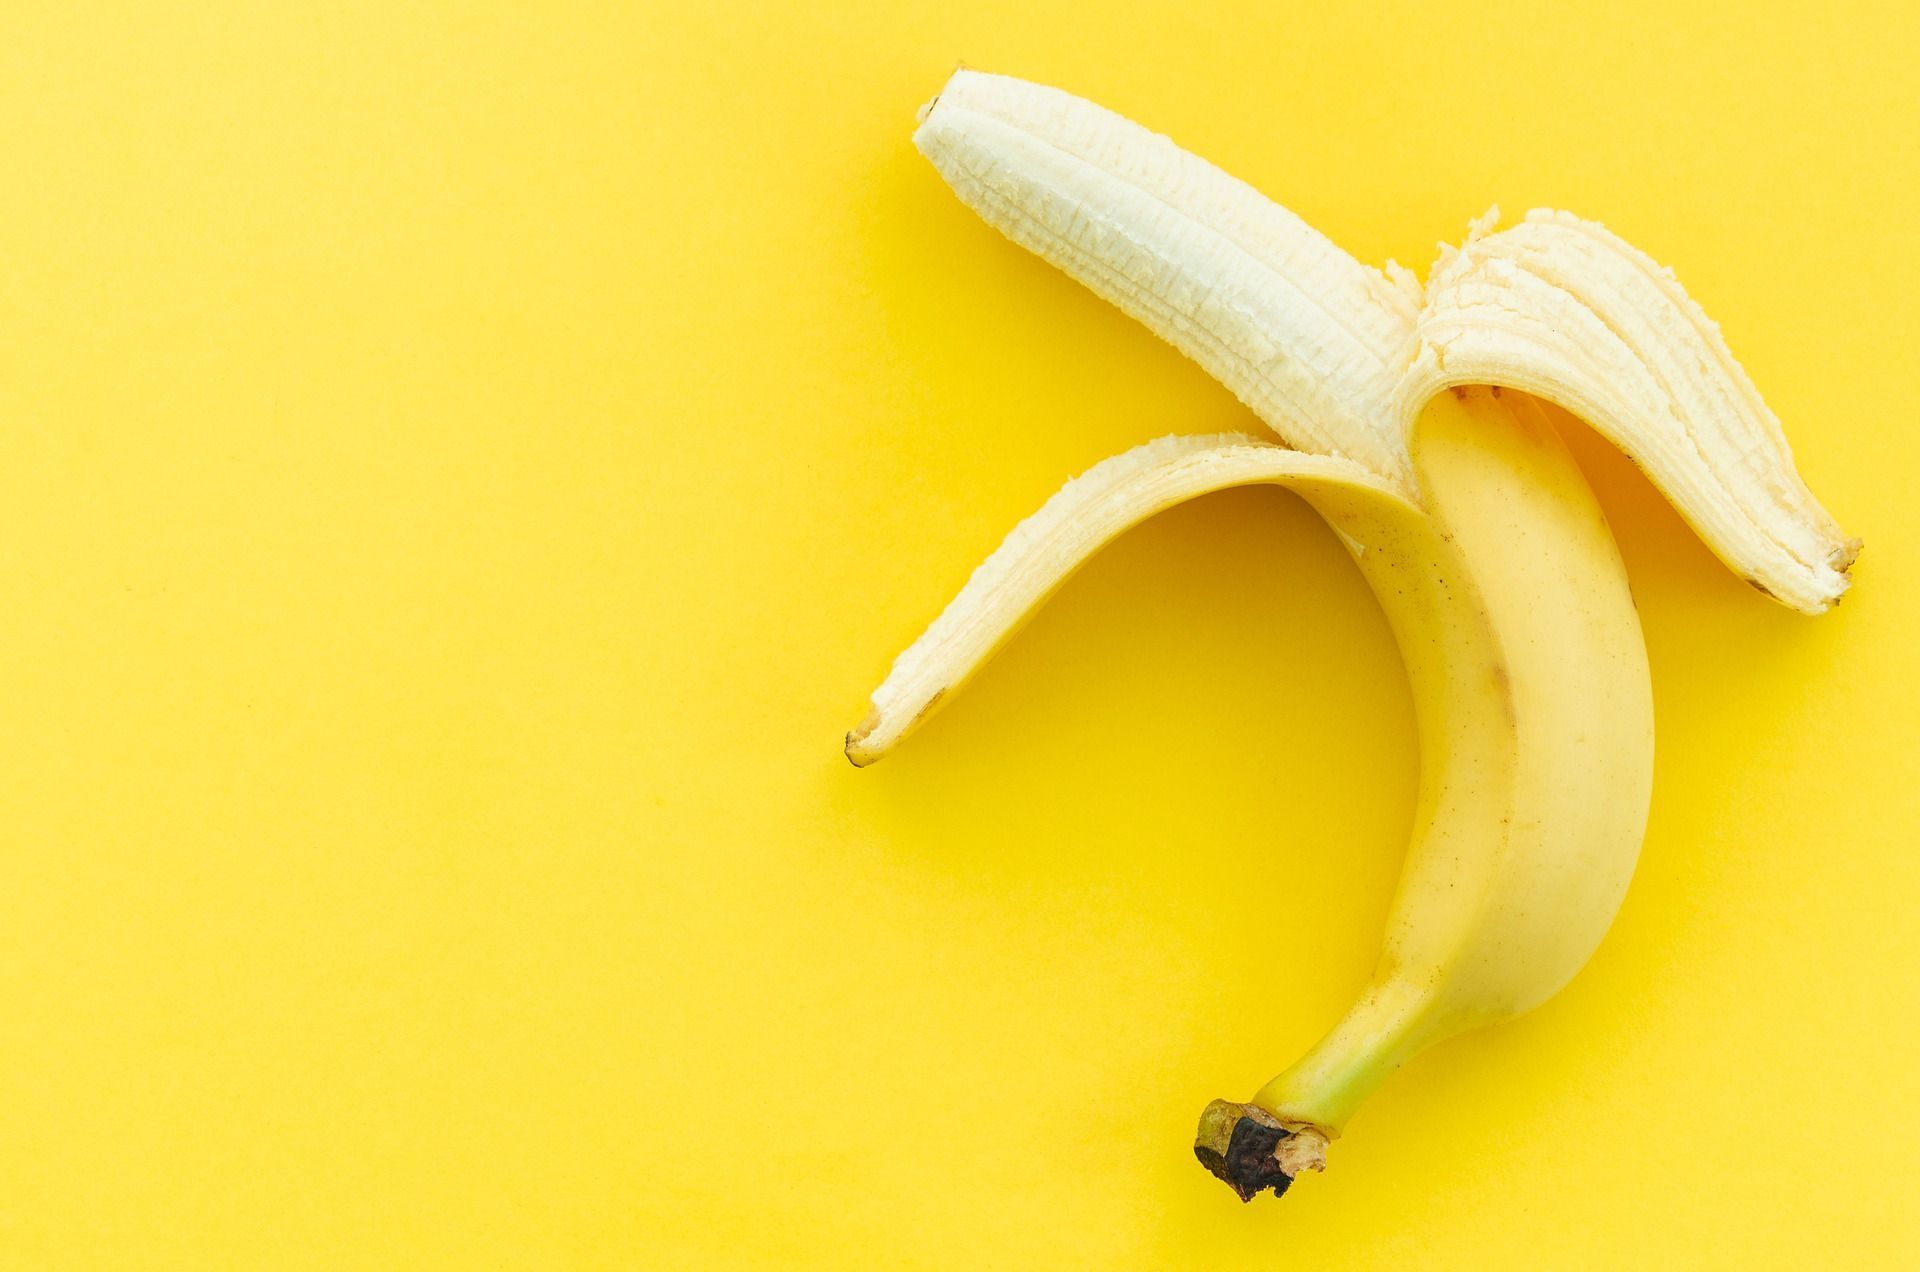 A banana previne algumas doenças. Saiba quais são